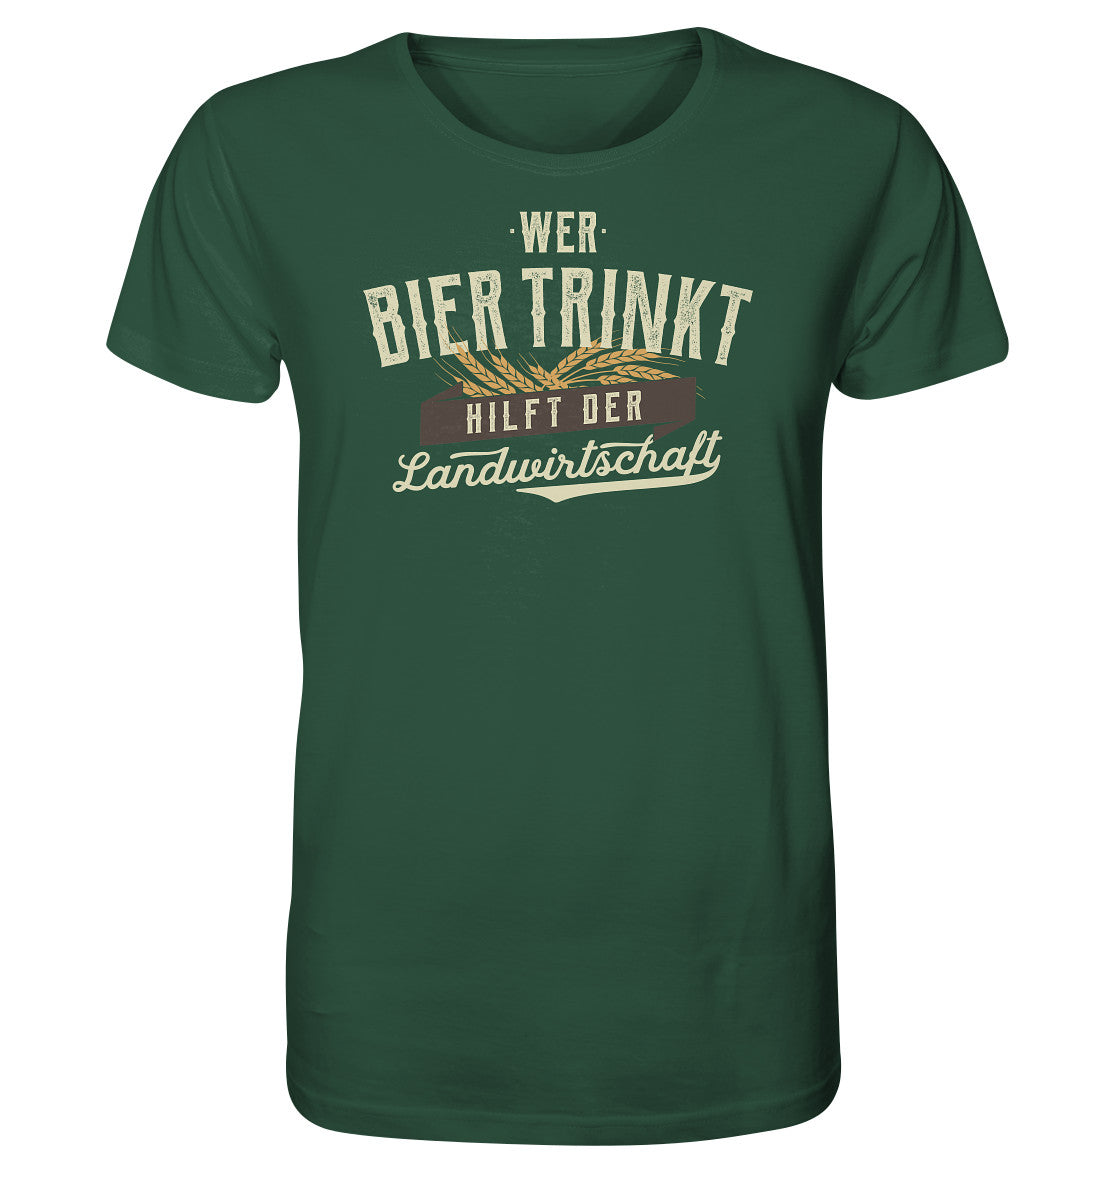 Wer Bier trinkt hilft der Landwirtschaft. Bier Shirt lustig Dorfkram® 